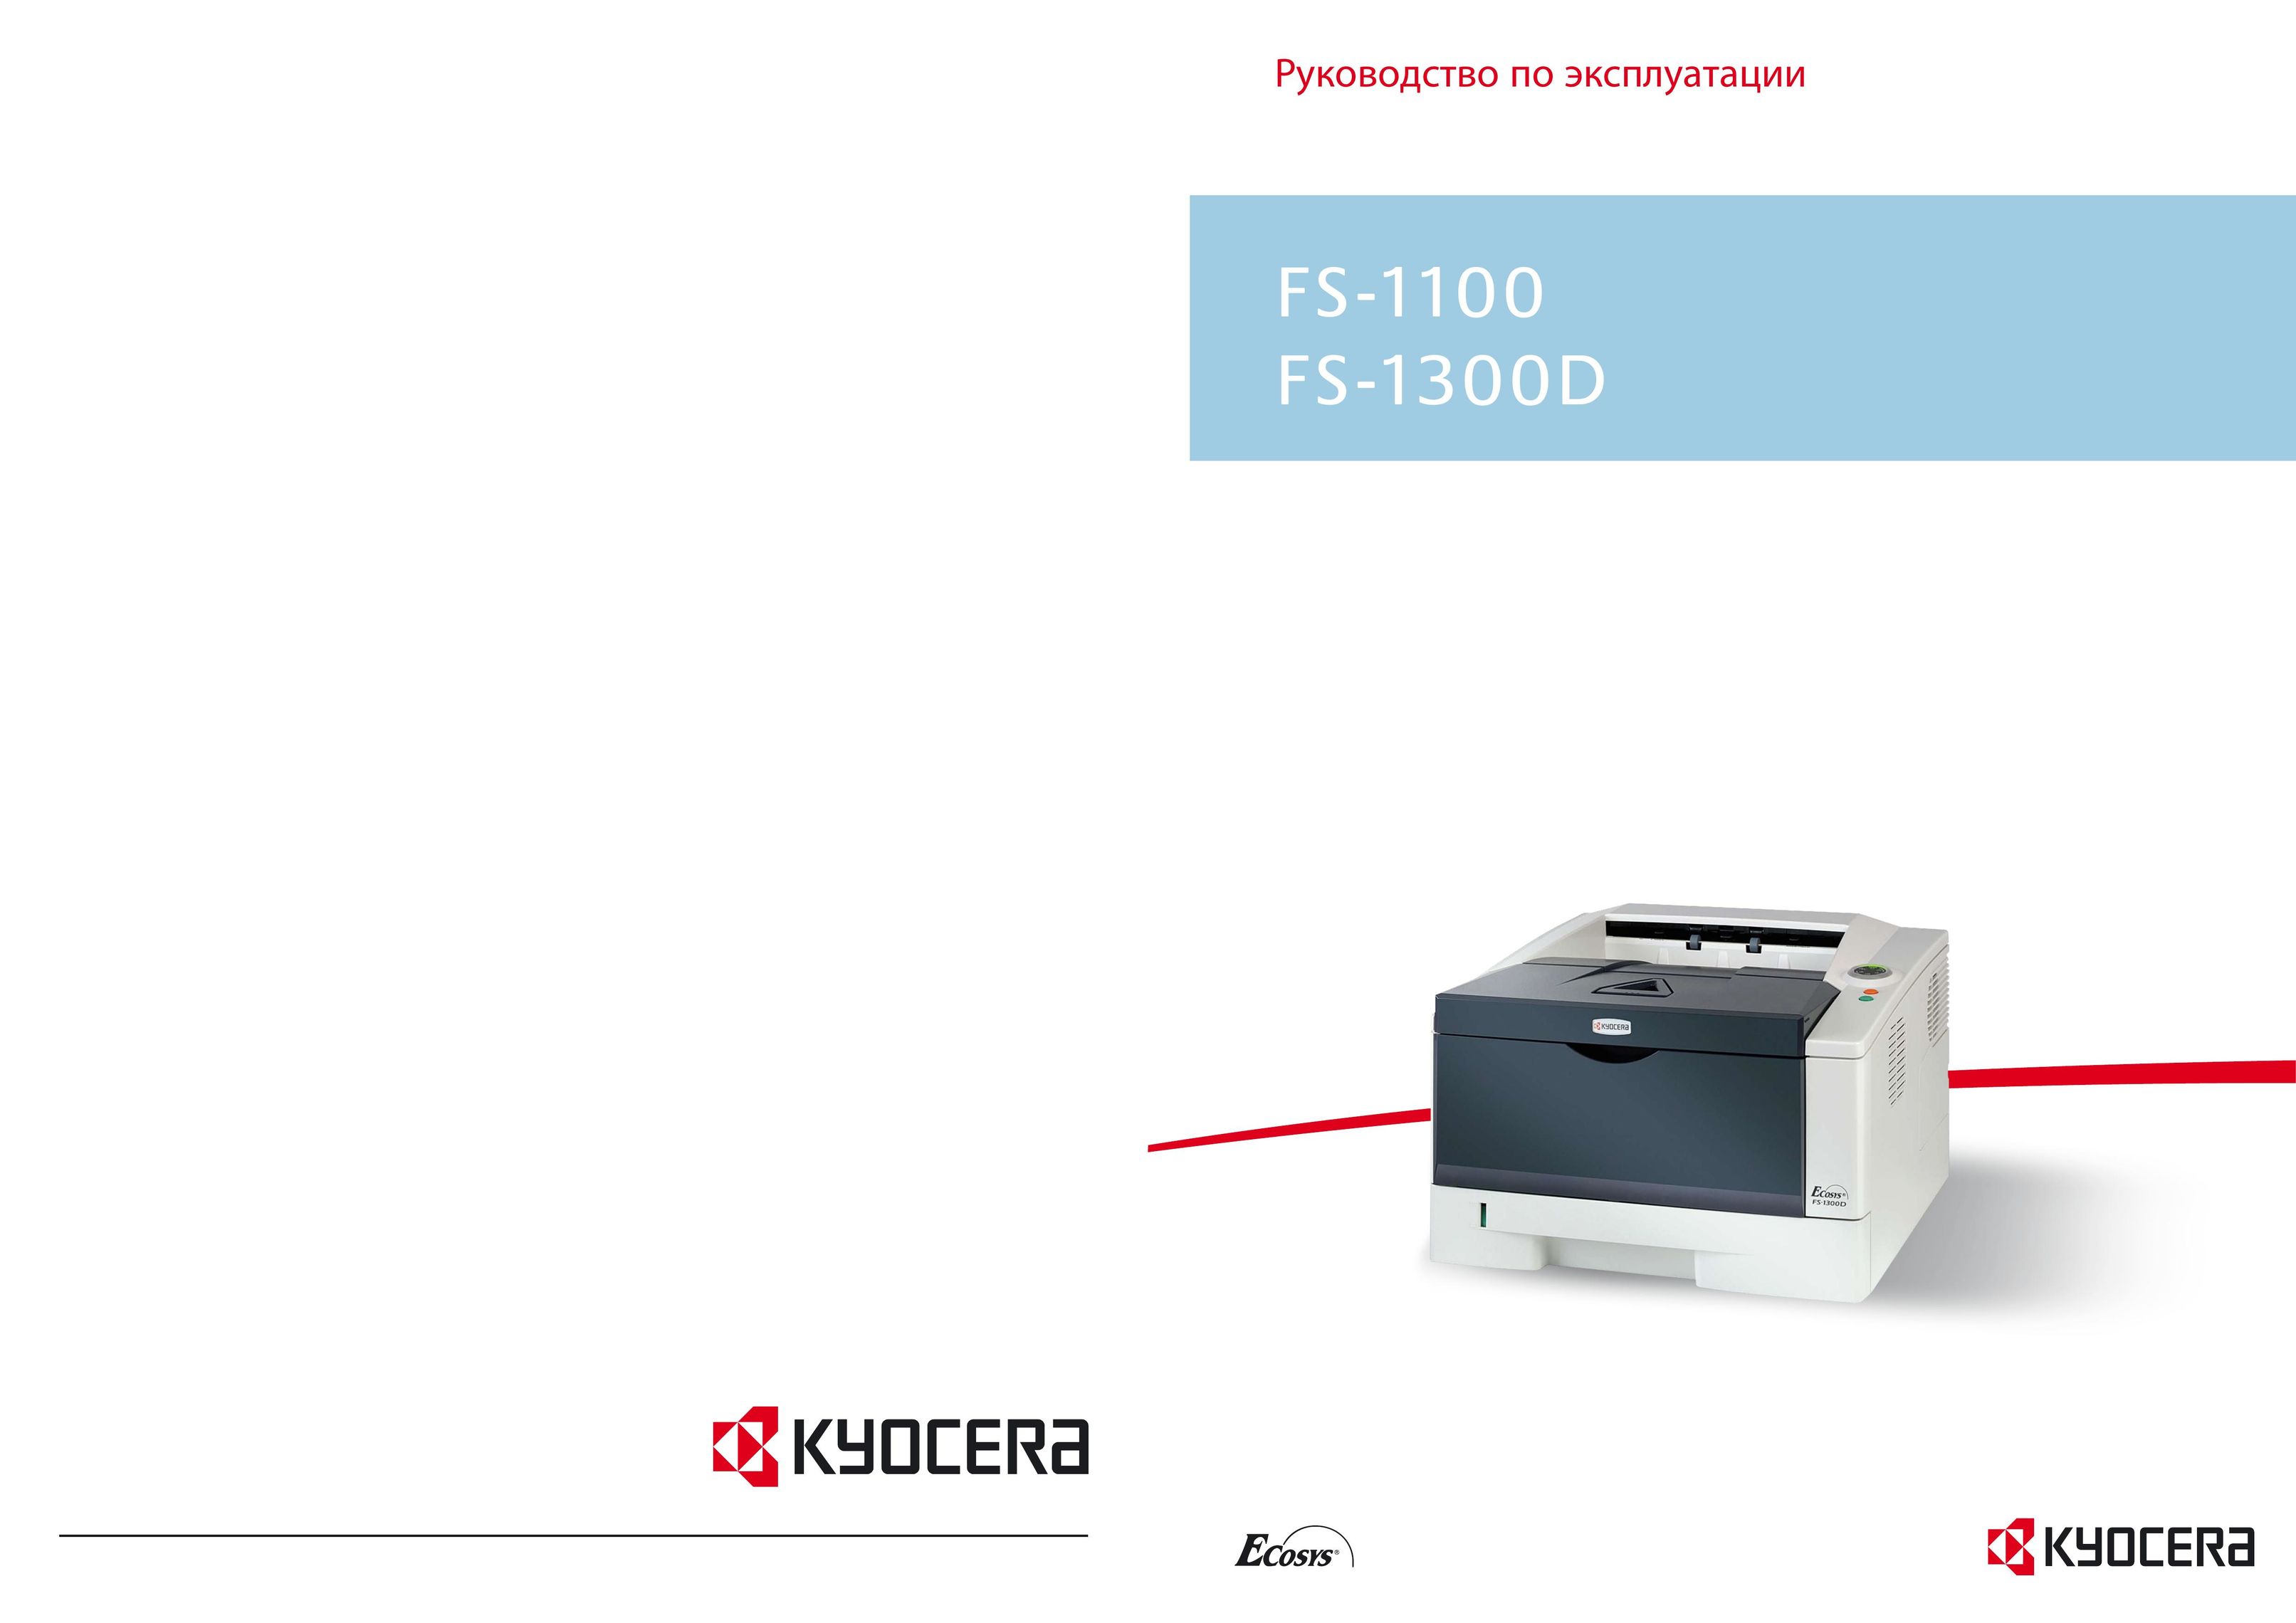 Kyocera FS-1100 All in One Printer User Manual